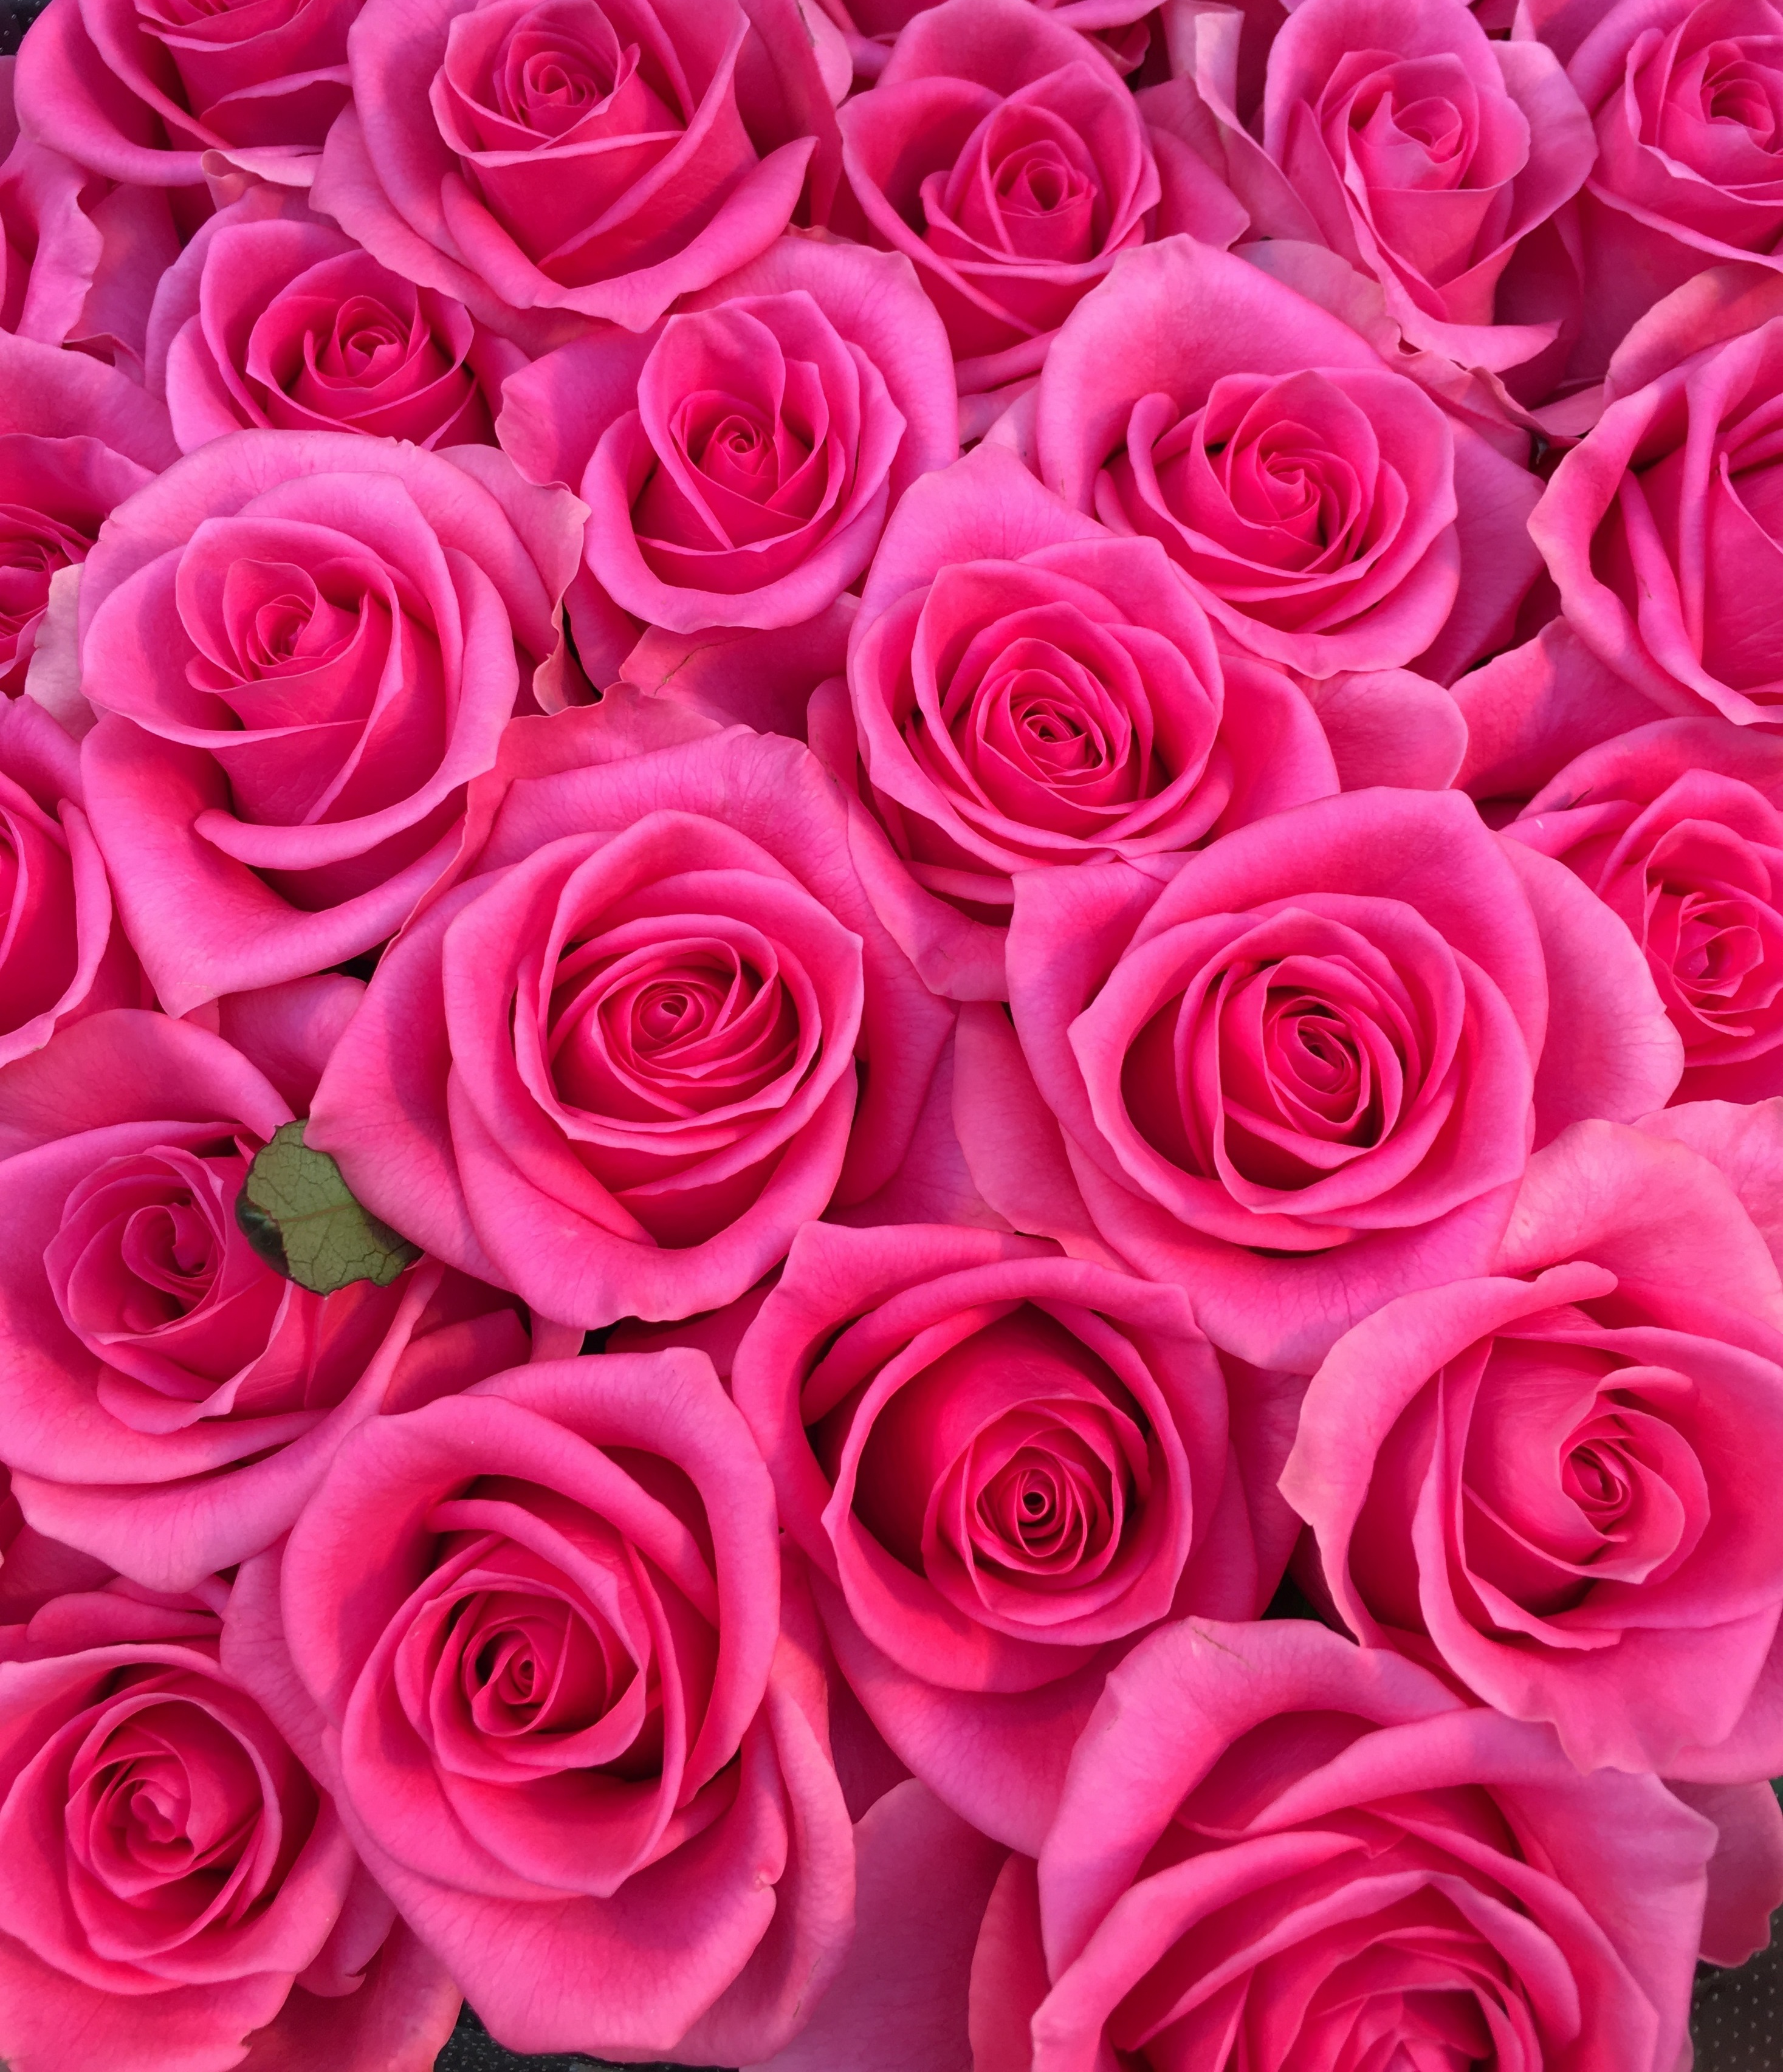 花屋 Hanaya １２０本のピンクバラ 花言葉 上品 感銘 特別な花束 豪華な花束 プロポーズの花束 想いを伝える花束 バラ 100本のバラ 108本のバラ 御注文お受け致します 福岡県北九州市小倉北区のフラワーショップです フラワースタンド バルーン フラワー